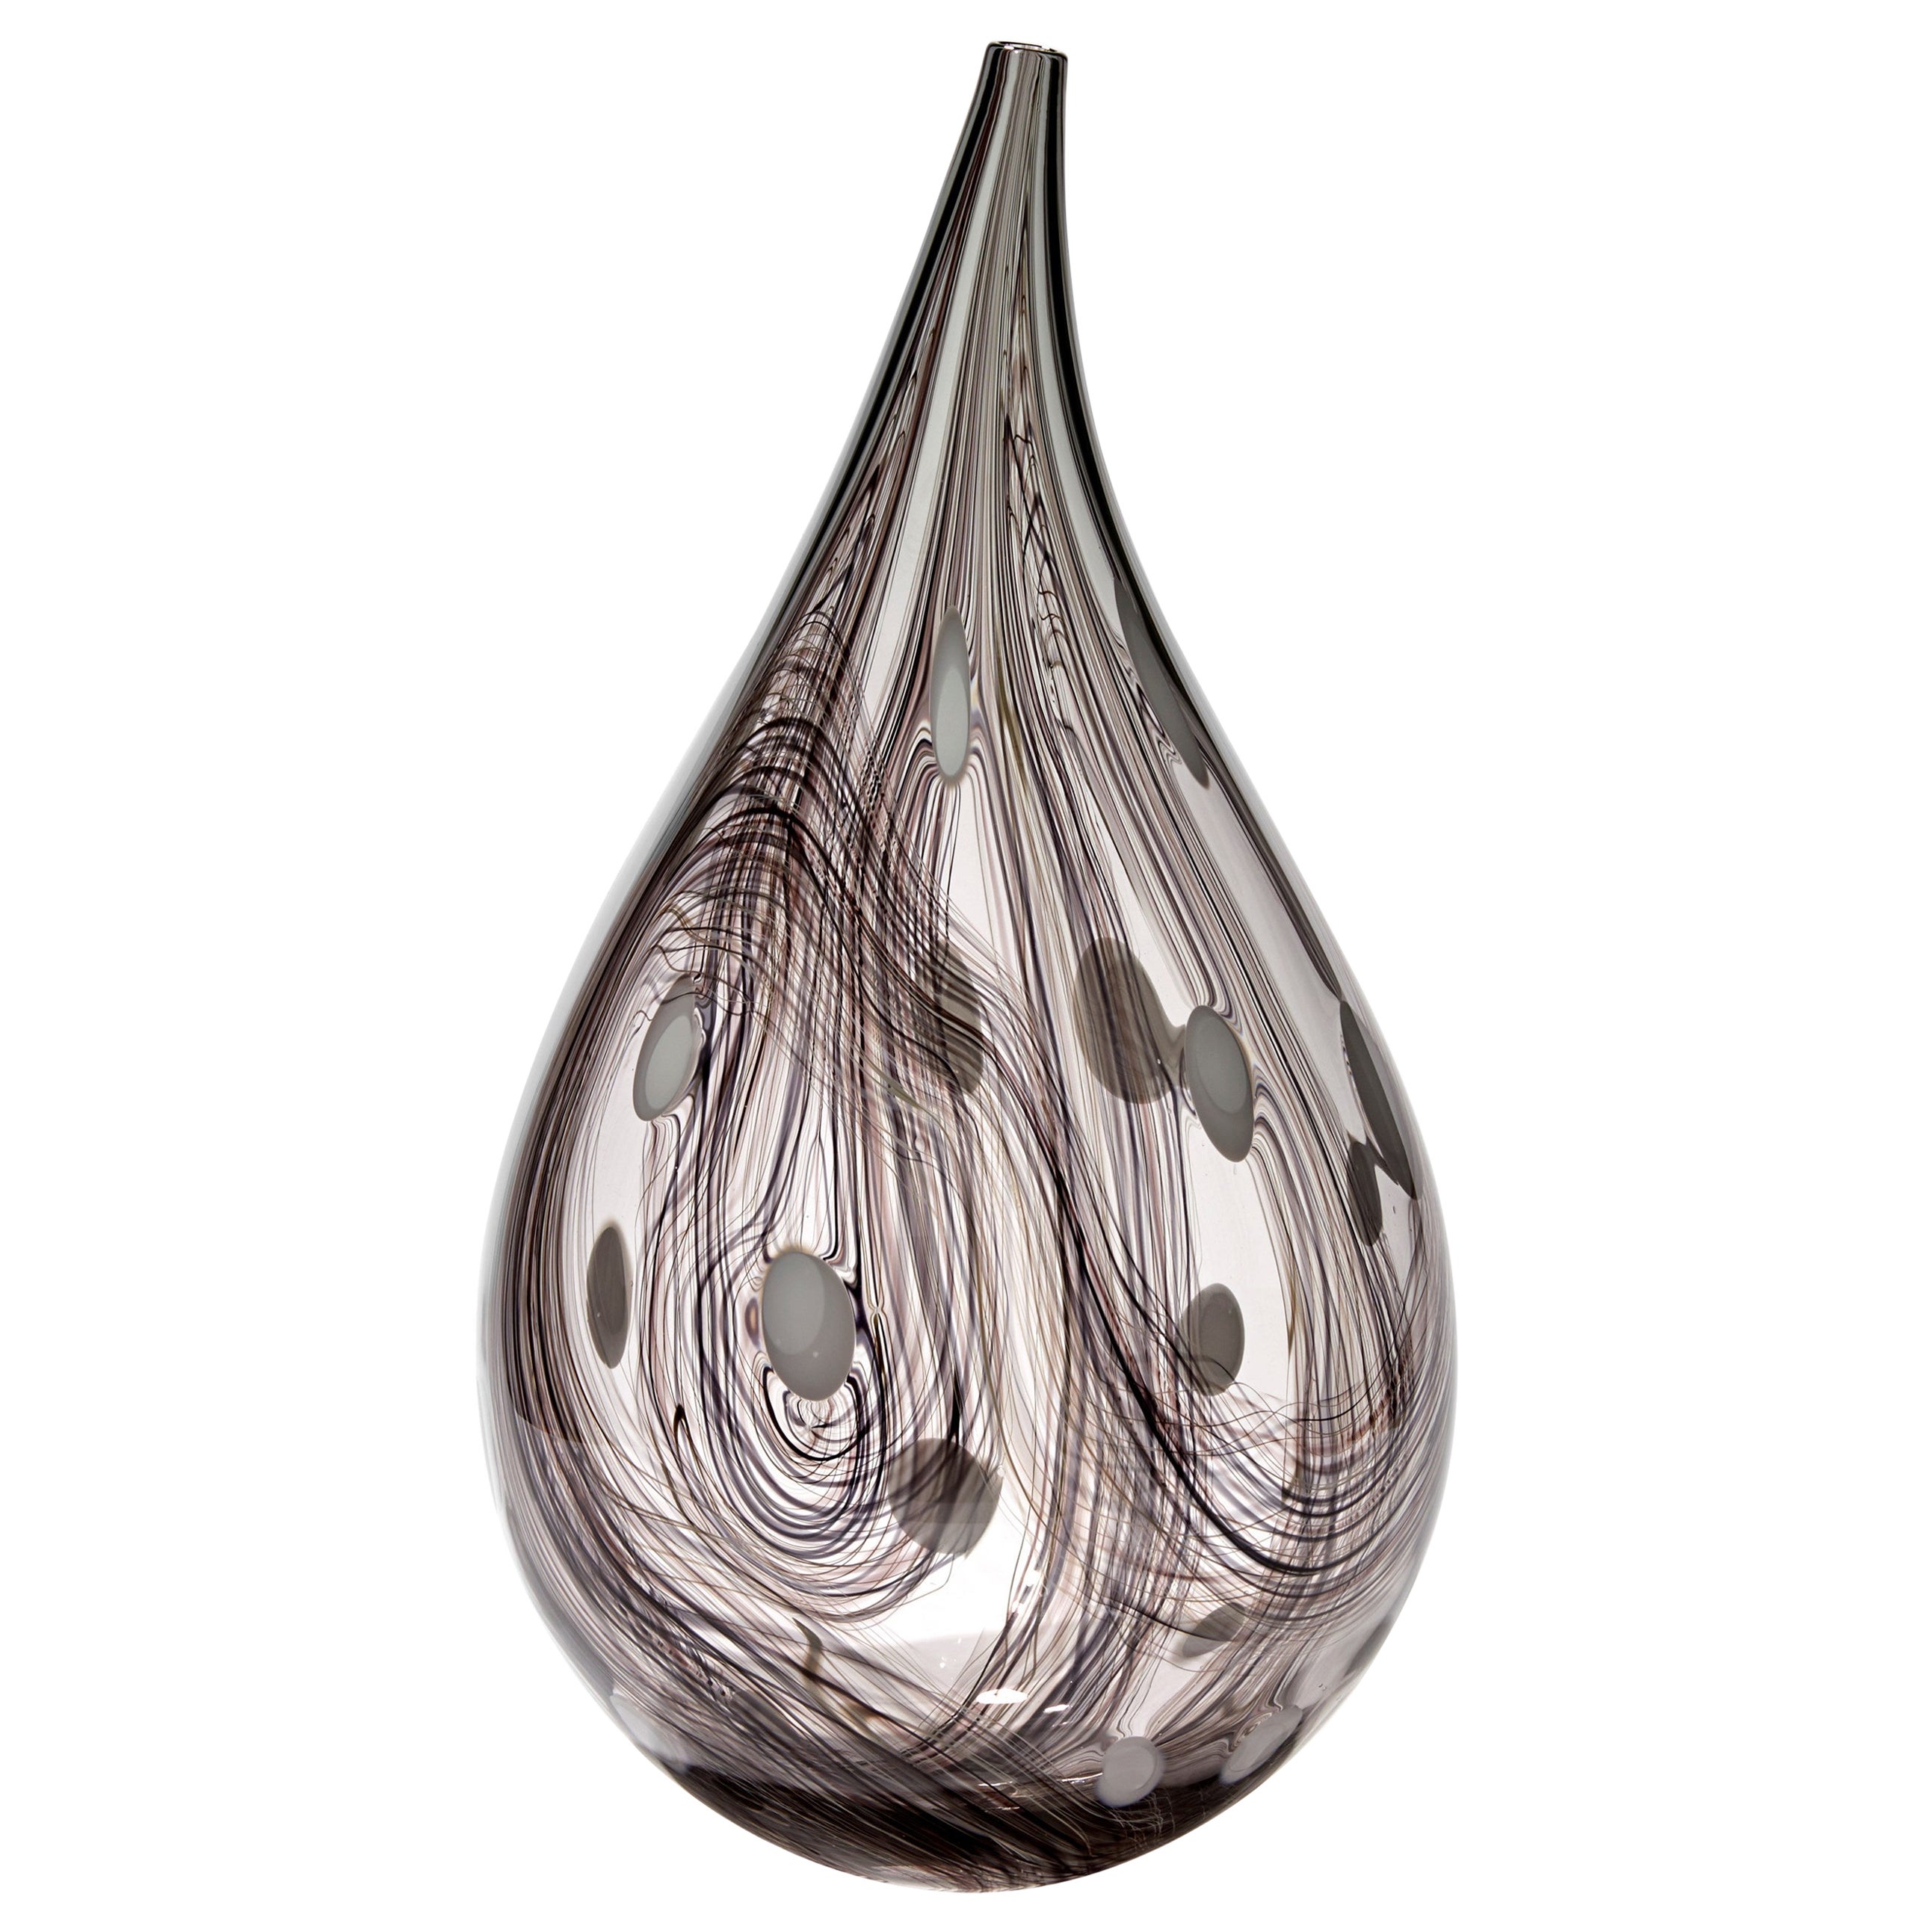 Hilos iii, recipiente abstracto de vidrio blanco, transparente y morado oscuro, de Ann Wåhlström